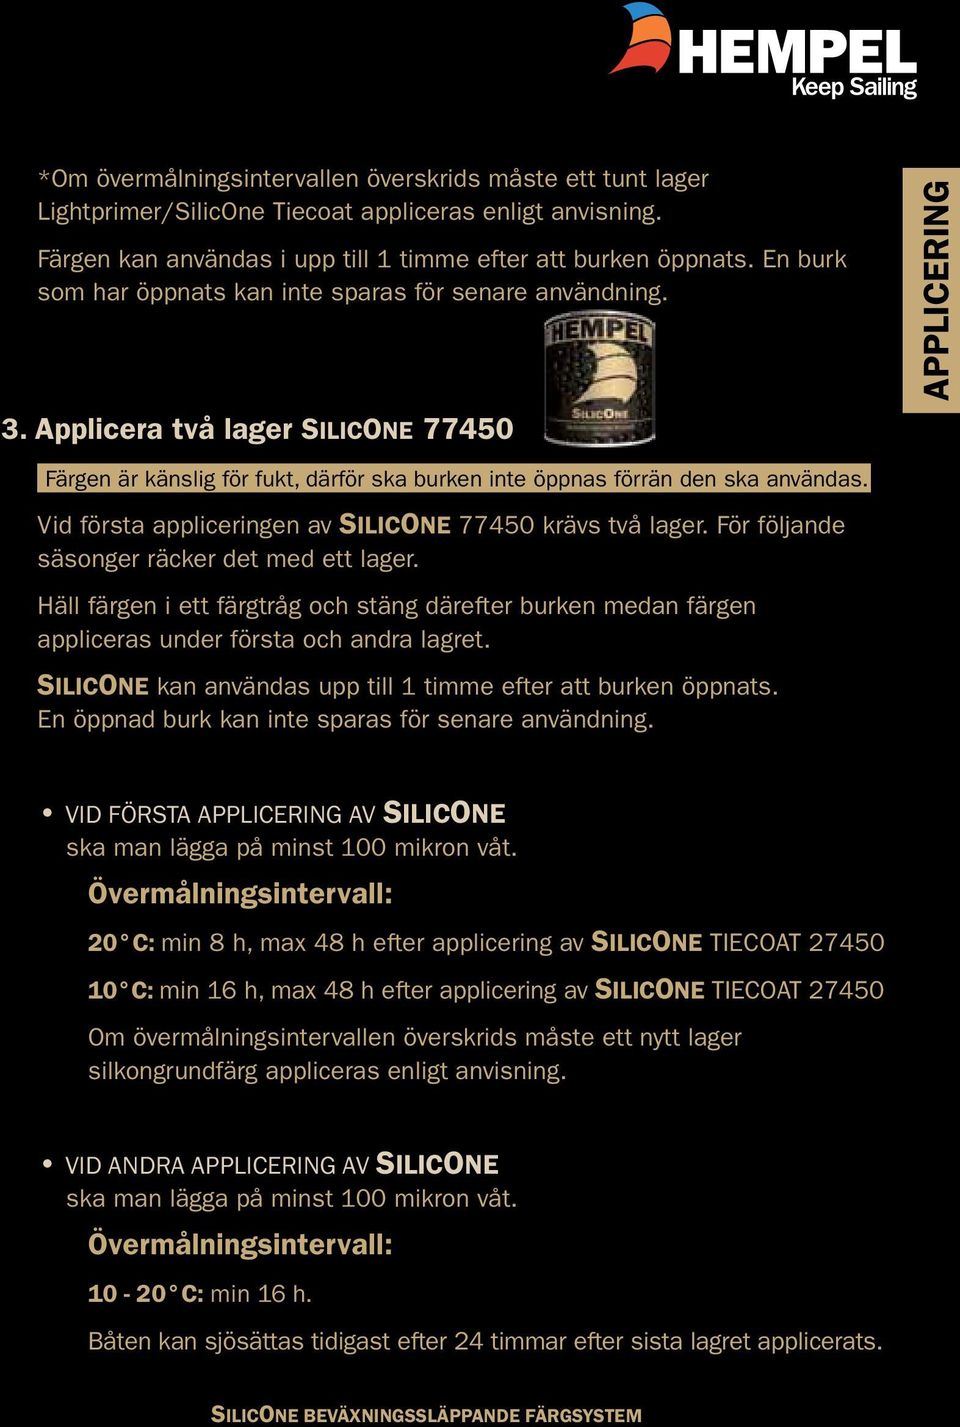 Vid första appliceringen av SILICONE 77450 krävs två lager. För följande säsonger räcker det med ett lager.